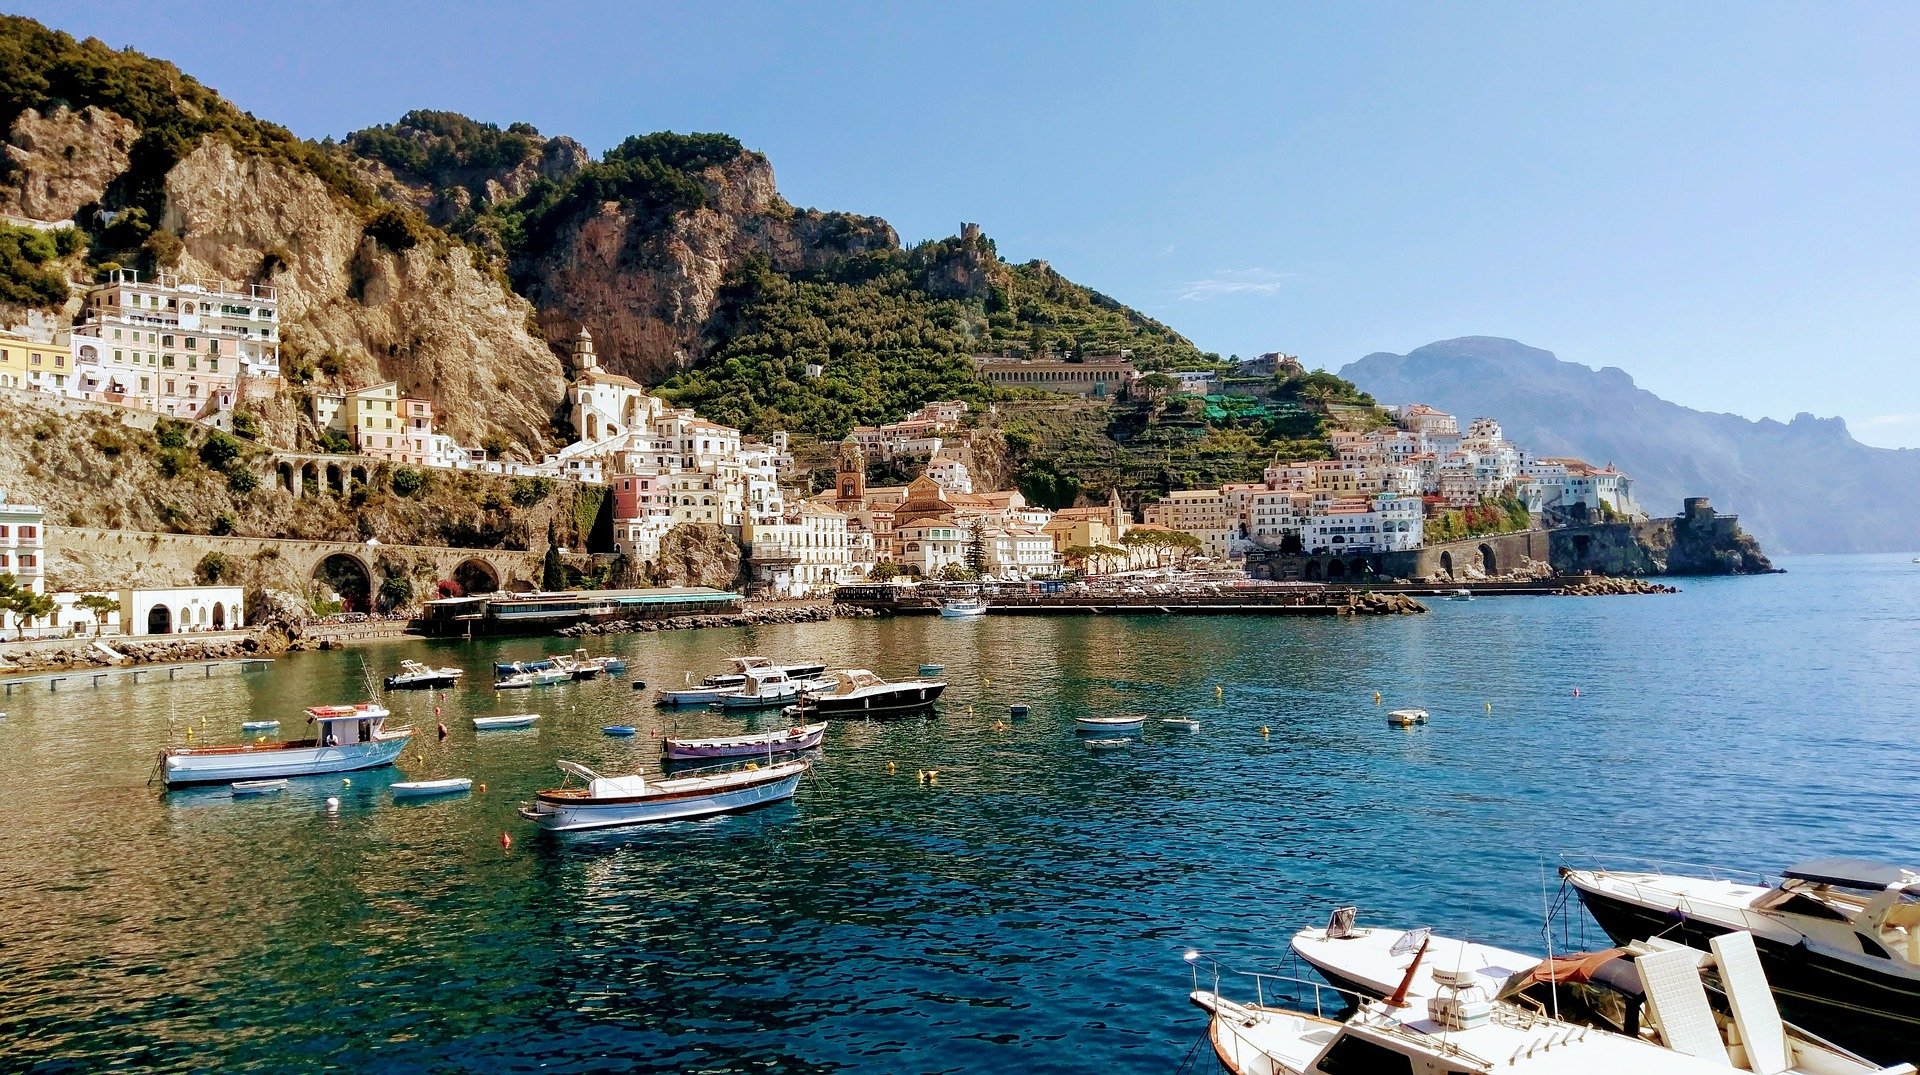 ie Stadt Amalfi an der gleichnamigen Amalfi-Küste